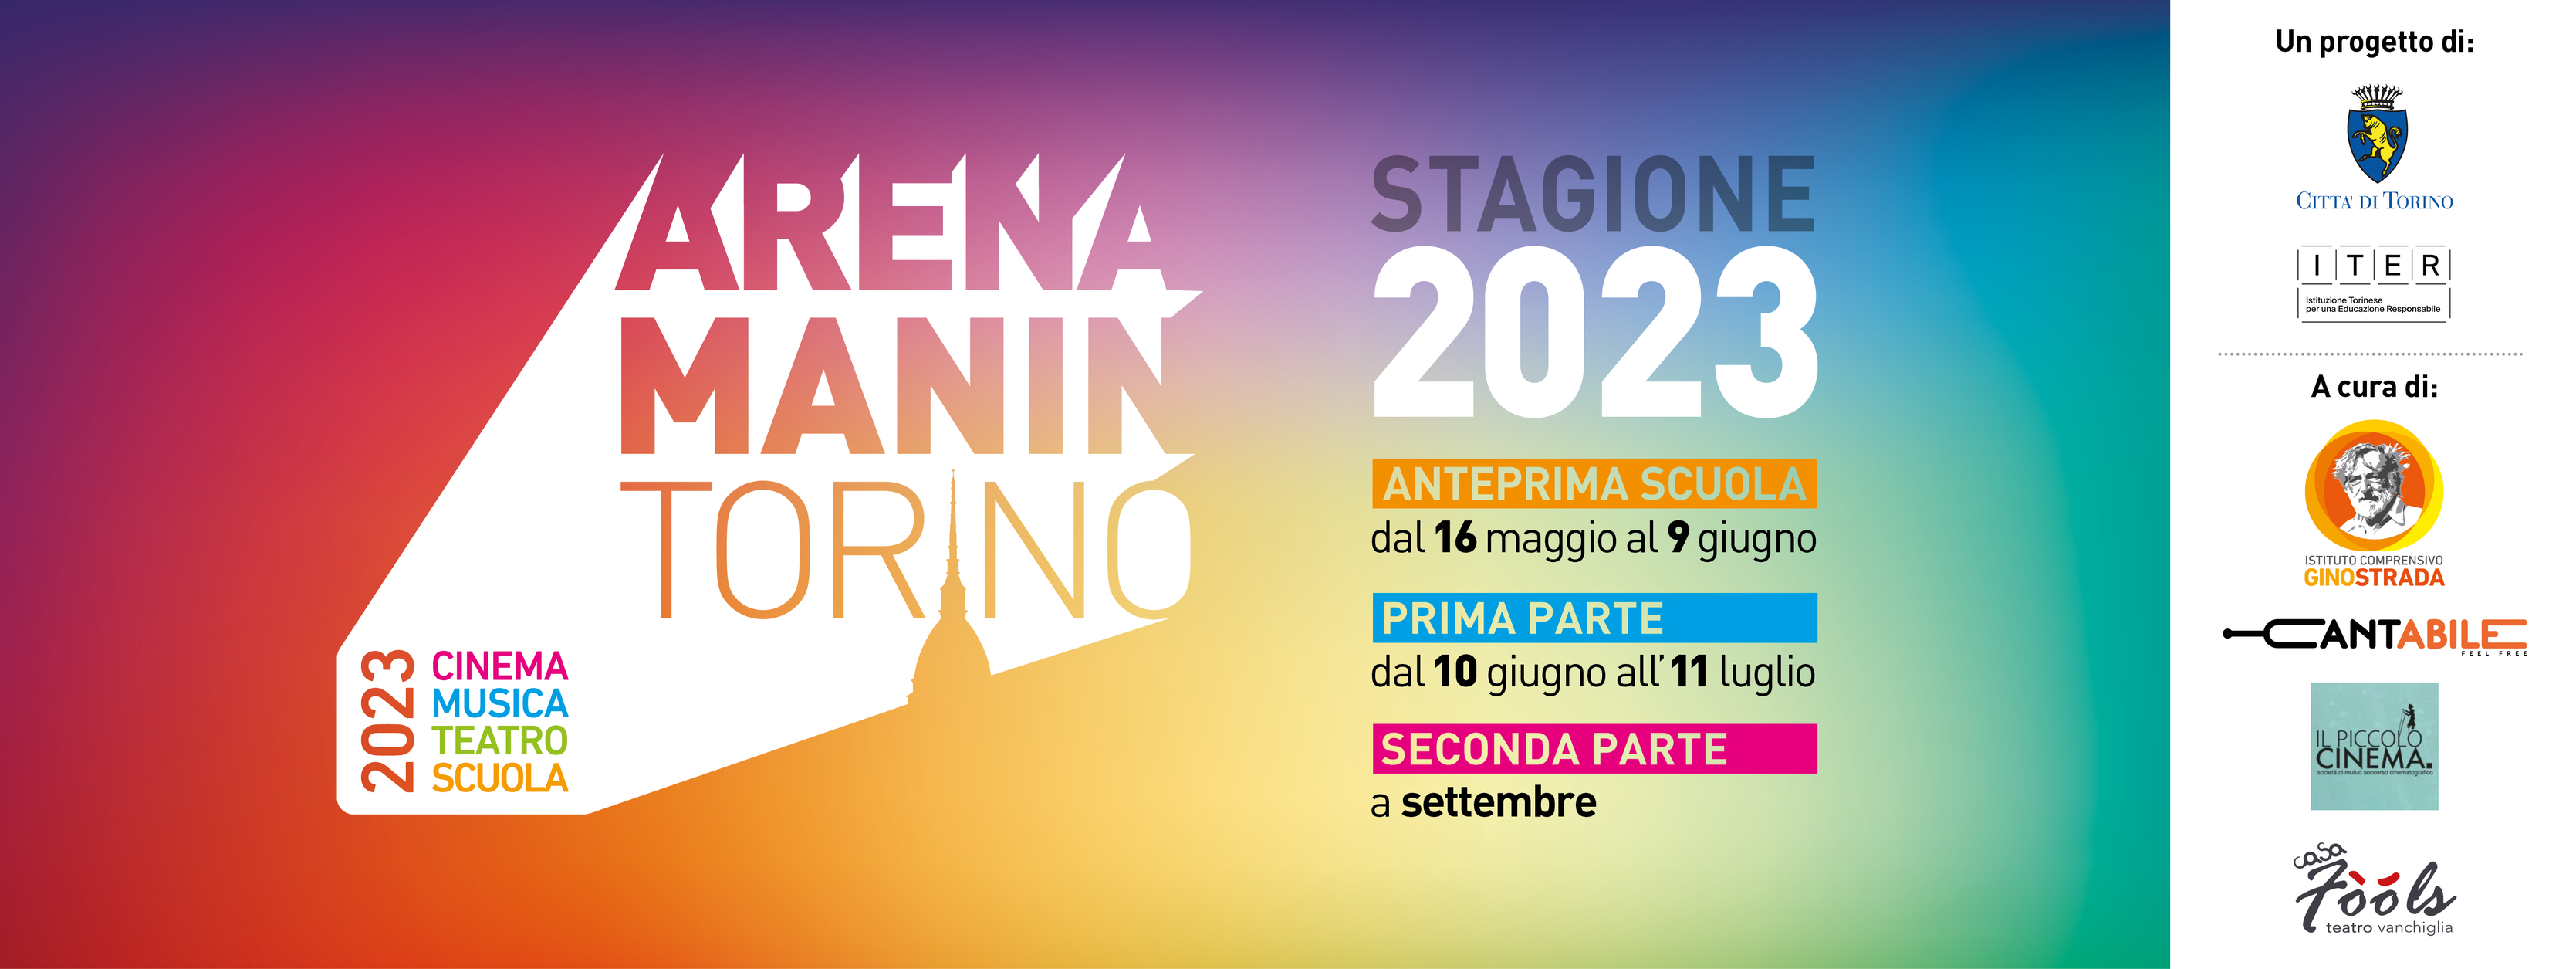 Arena Manin - Stagione 2023